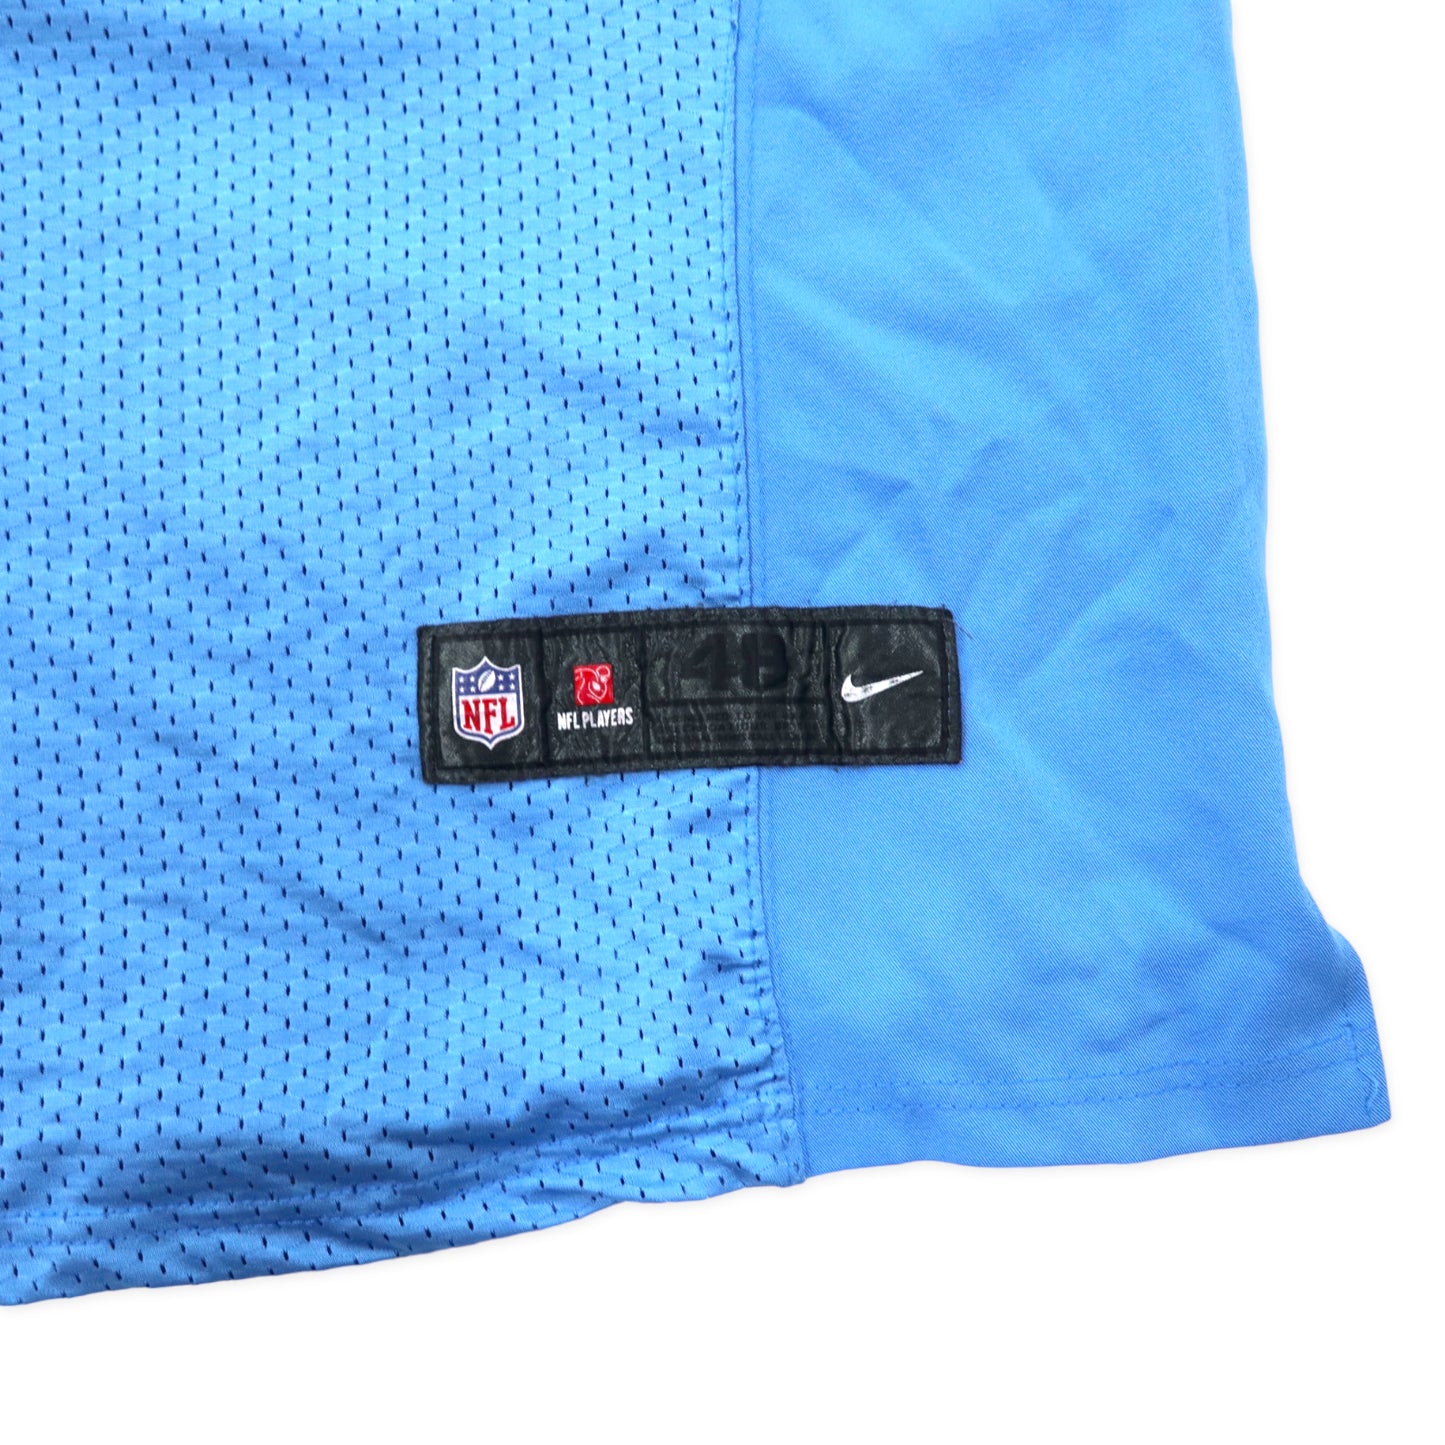 NIKE NFL ゲームシャツ 48 ブルー ポリエステル CHARGERS ナンバリング RIVERS ビッグサイズ